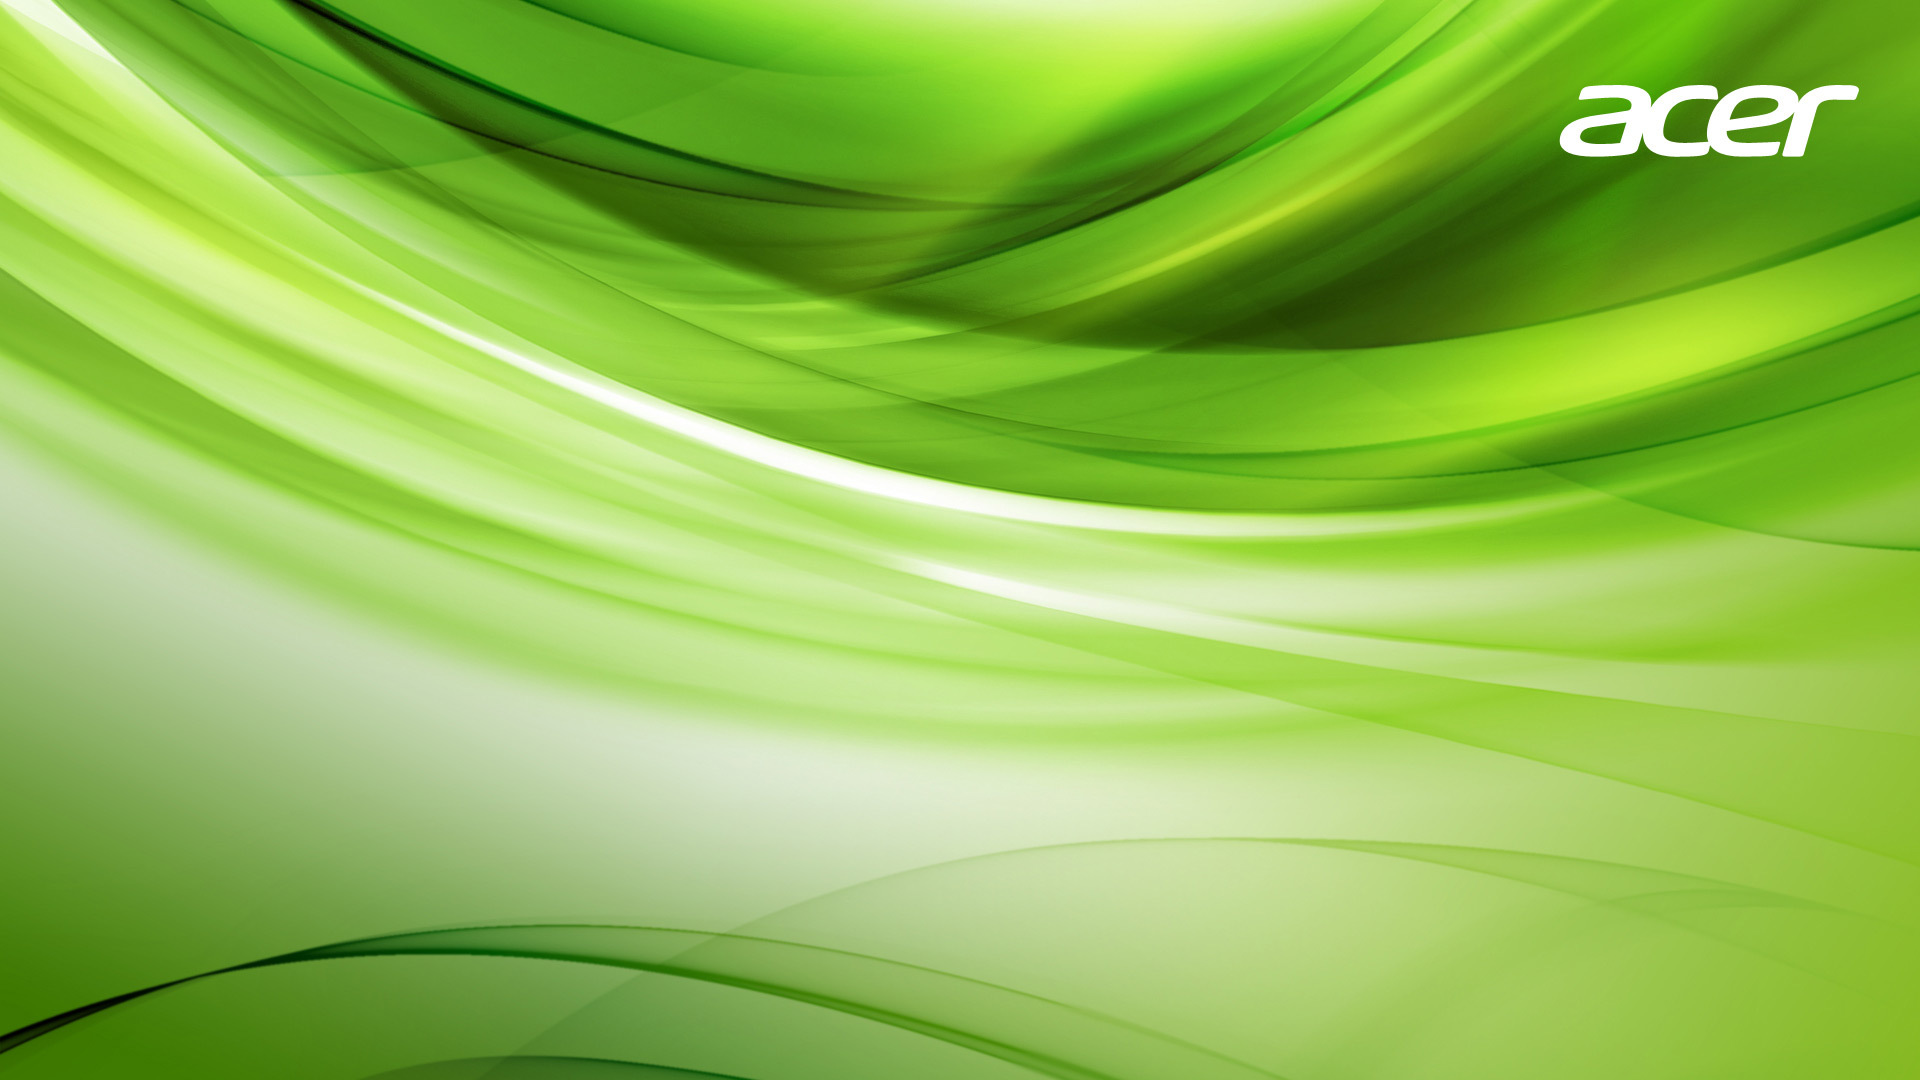 Acer Desktop Green Wallpapers Download